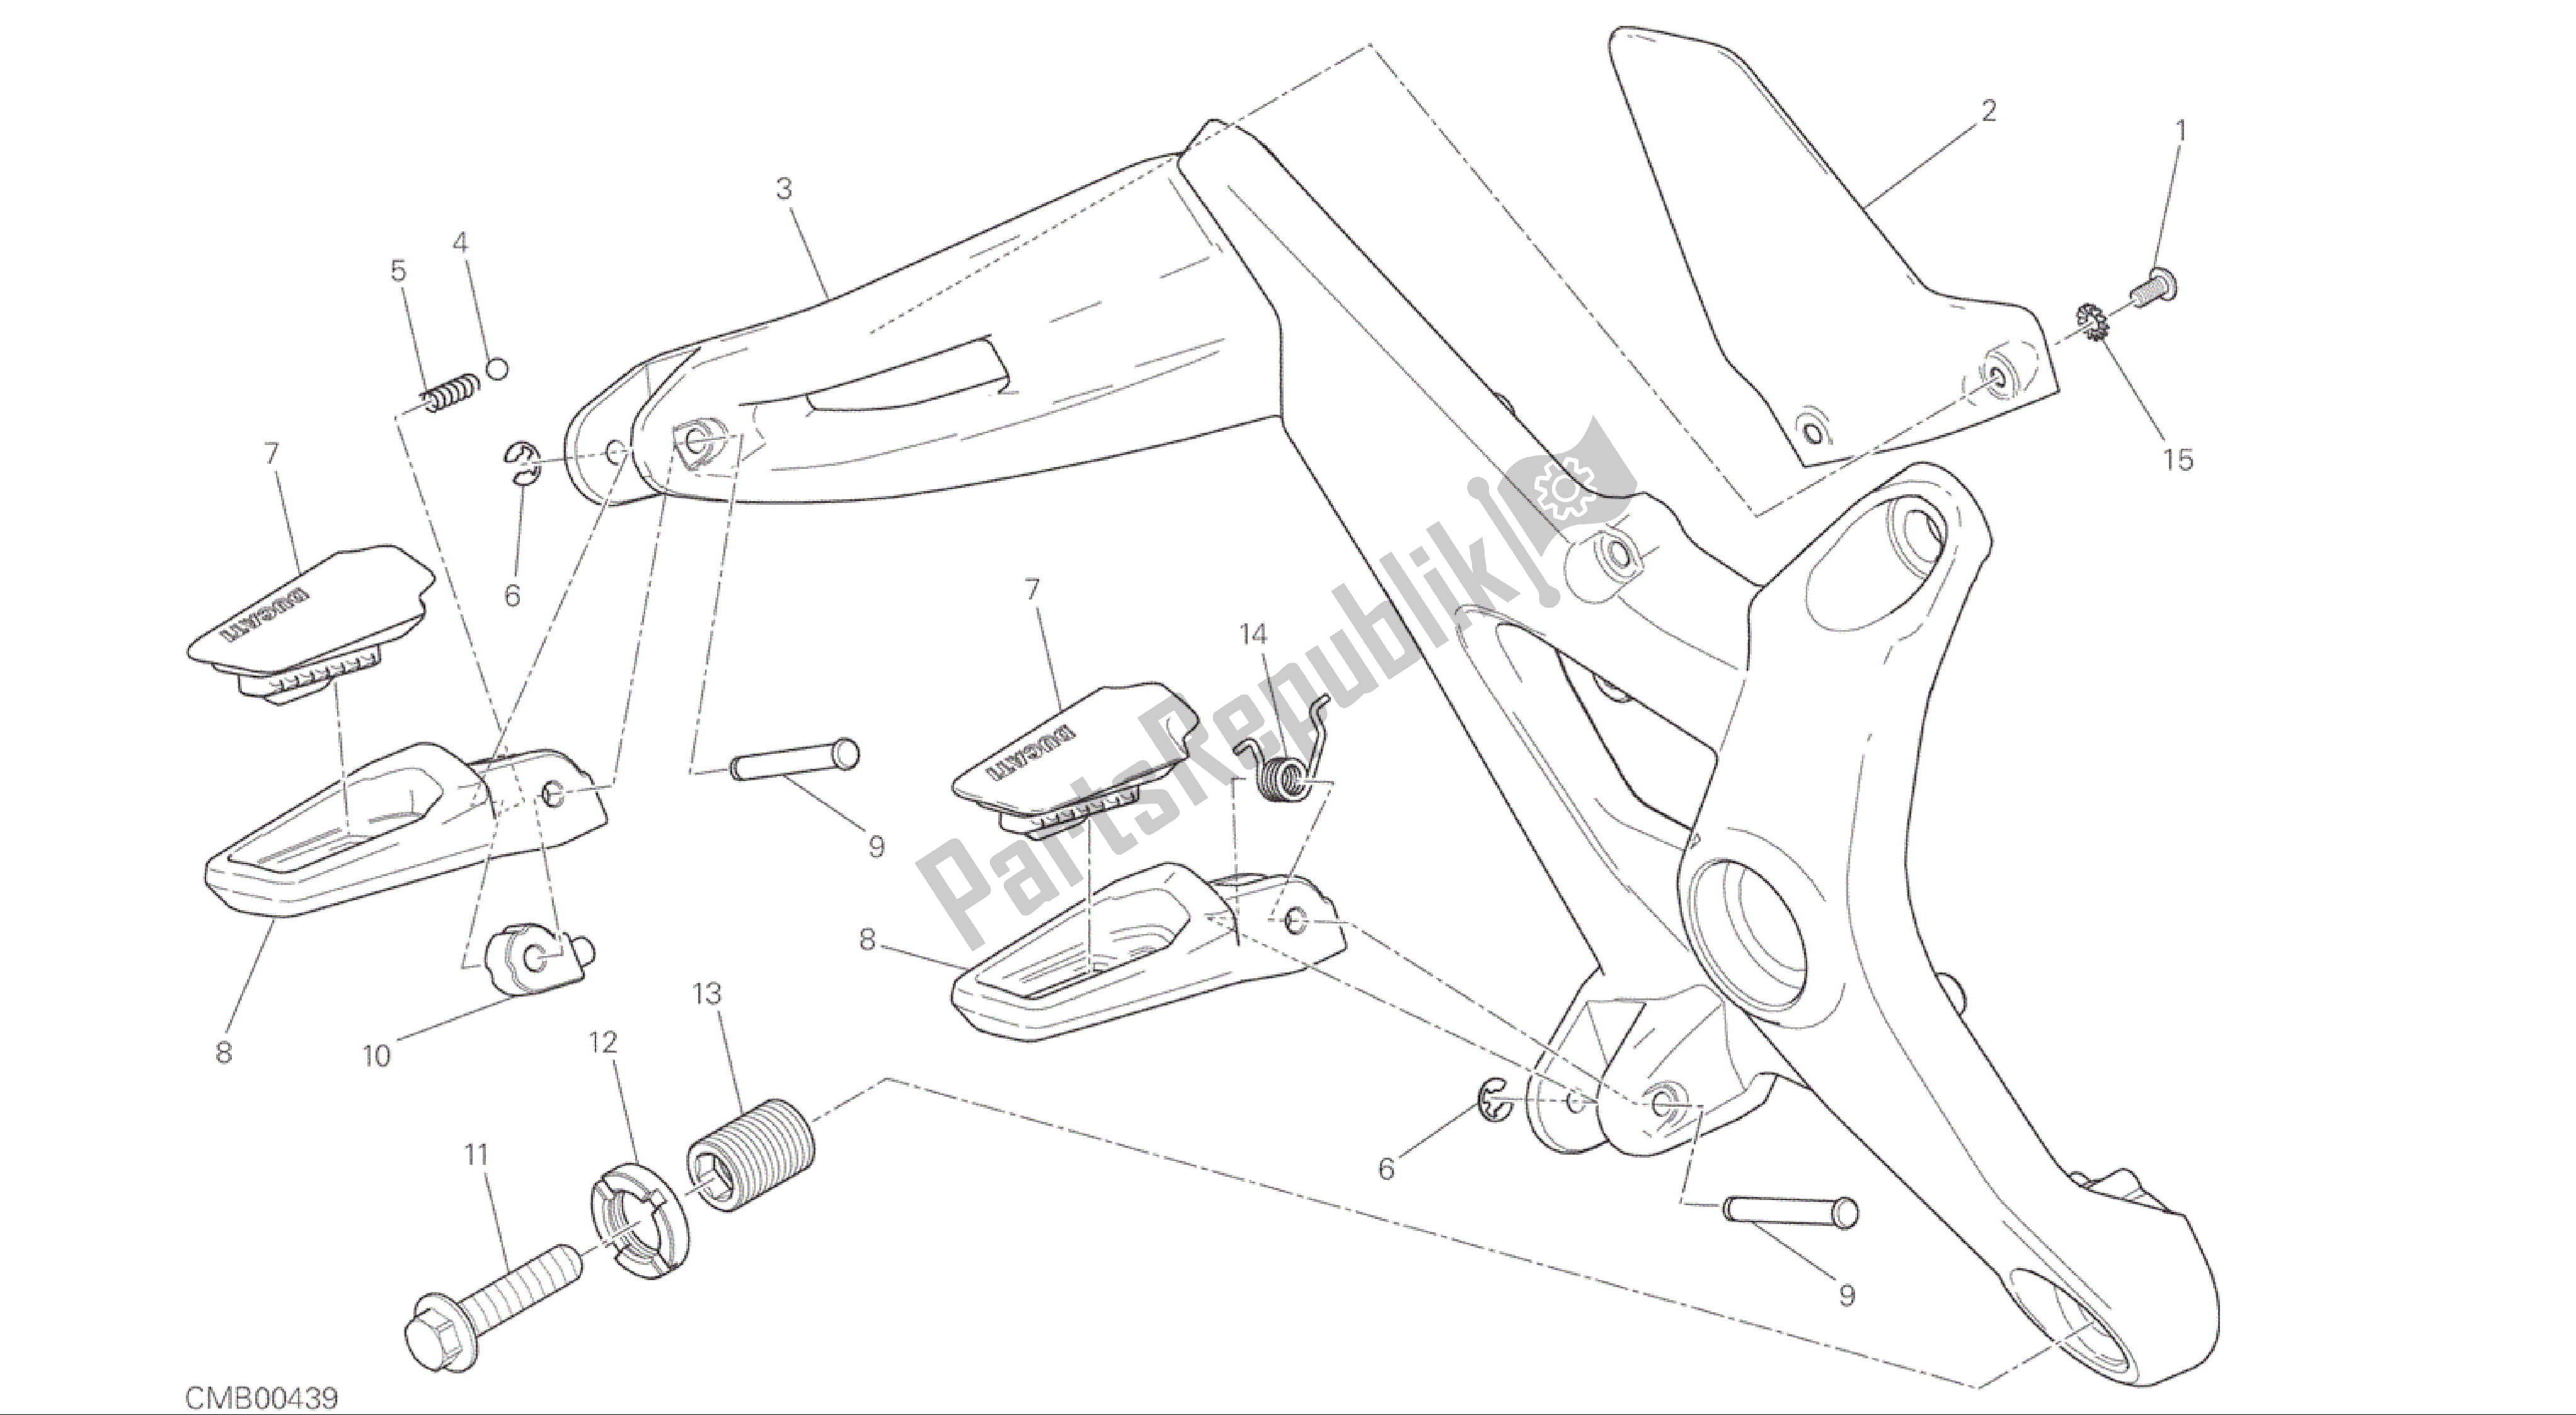 Todas las partes para Dibujo 27b - Reposapiés, Marco De Grupo Derecho [mod: M 1200] de Ducati Monster 1200 2015